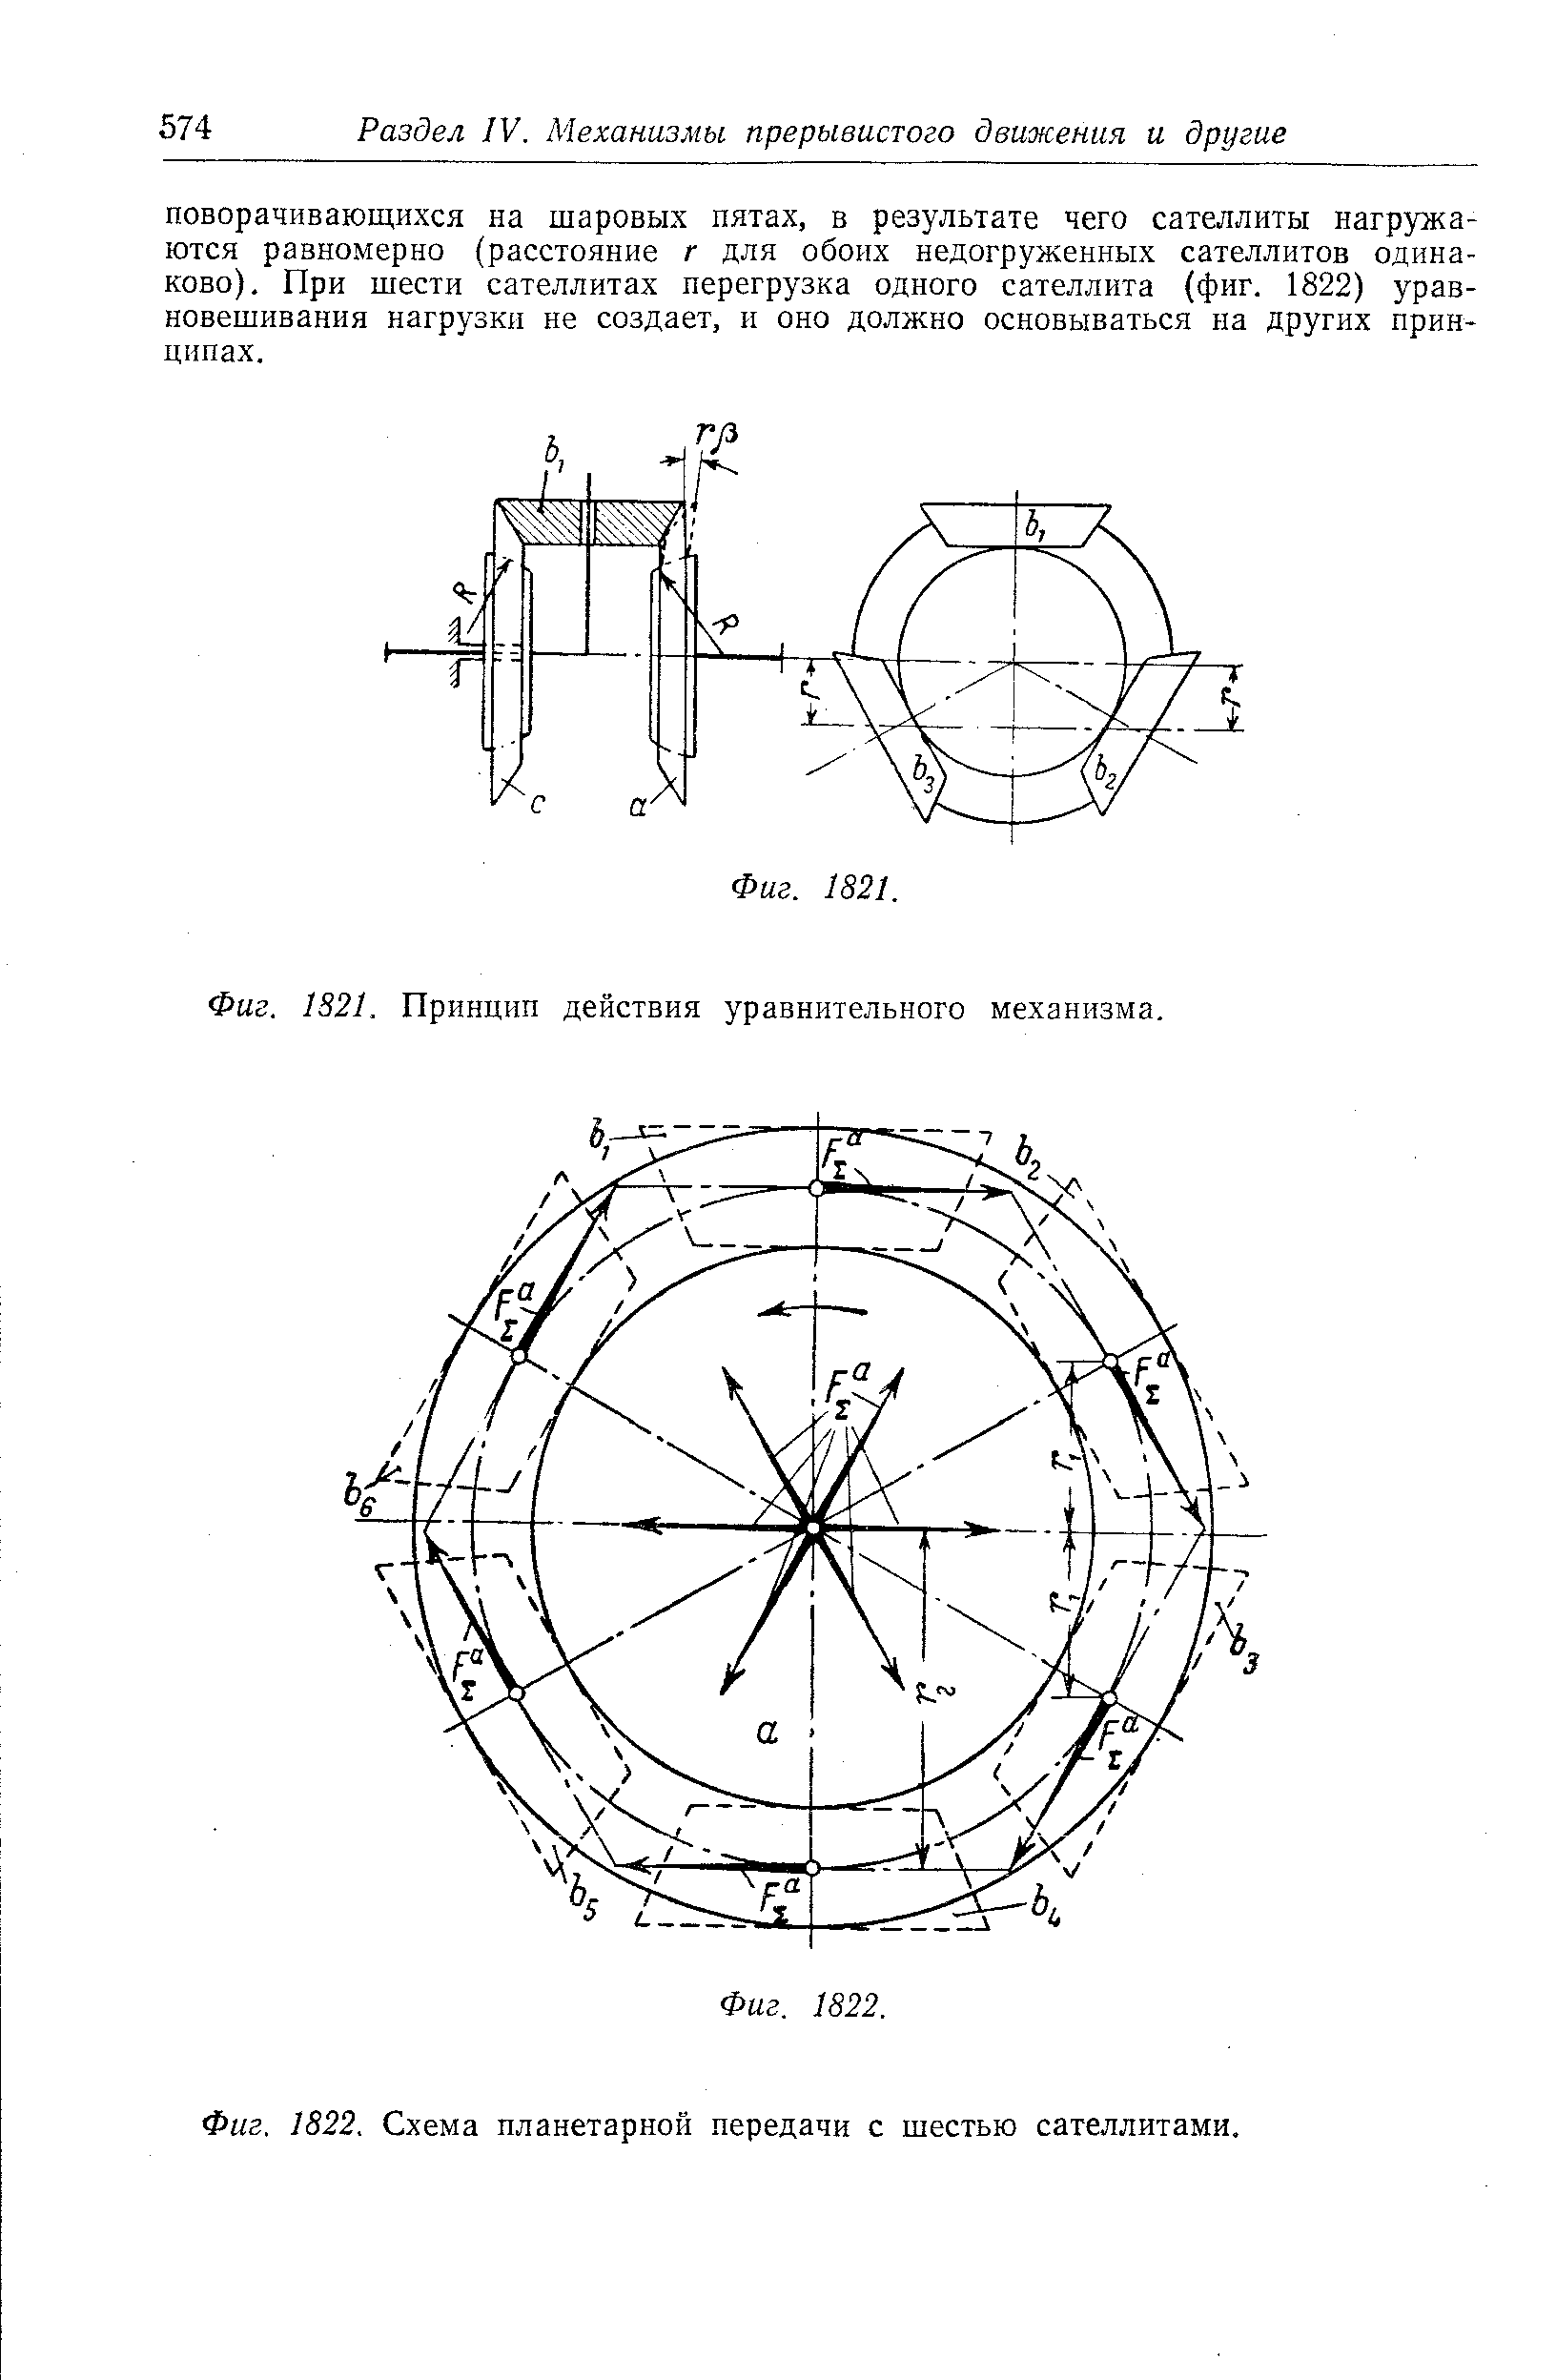 Фиг. 1822. Схема планетарной передачи с шестью сателлитами.
